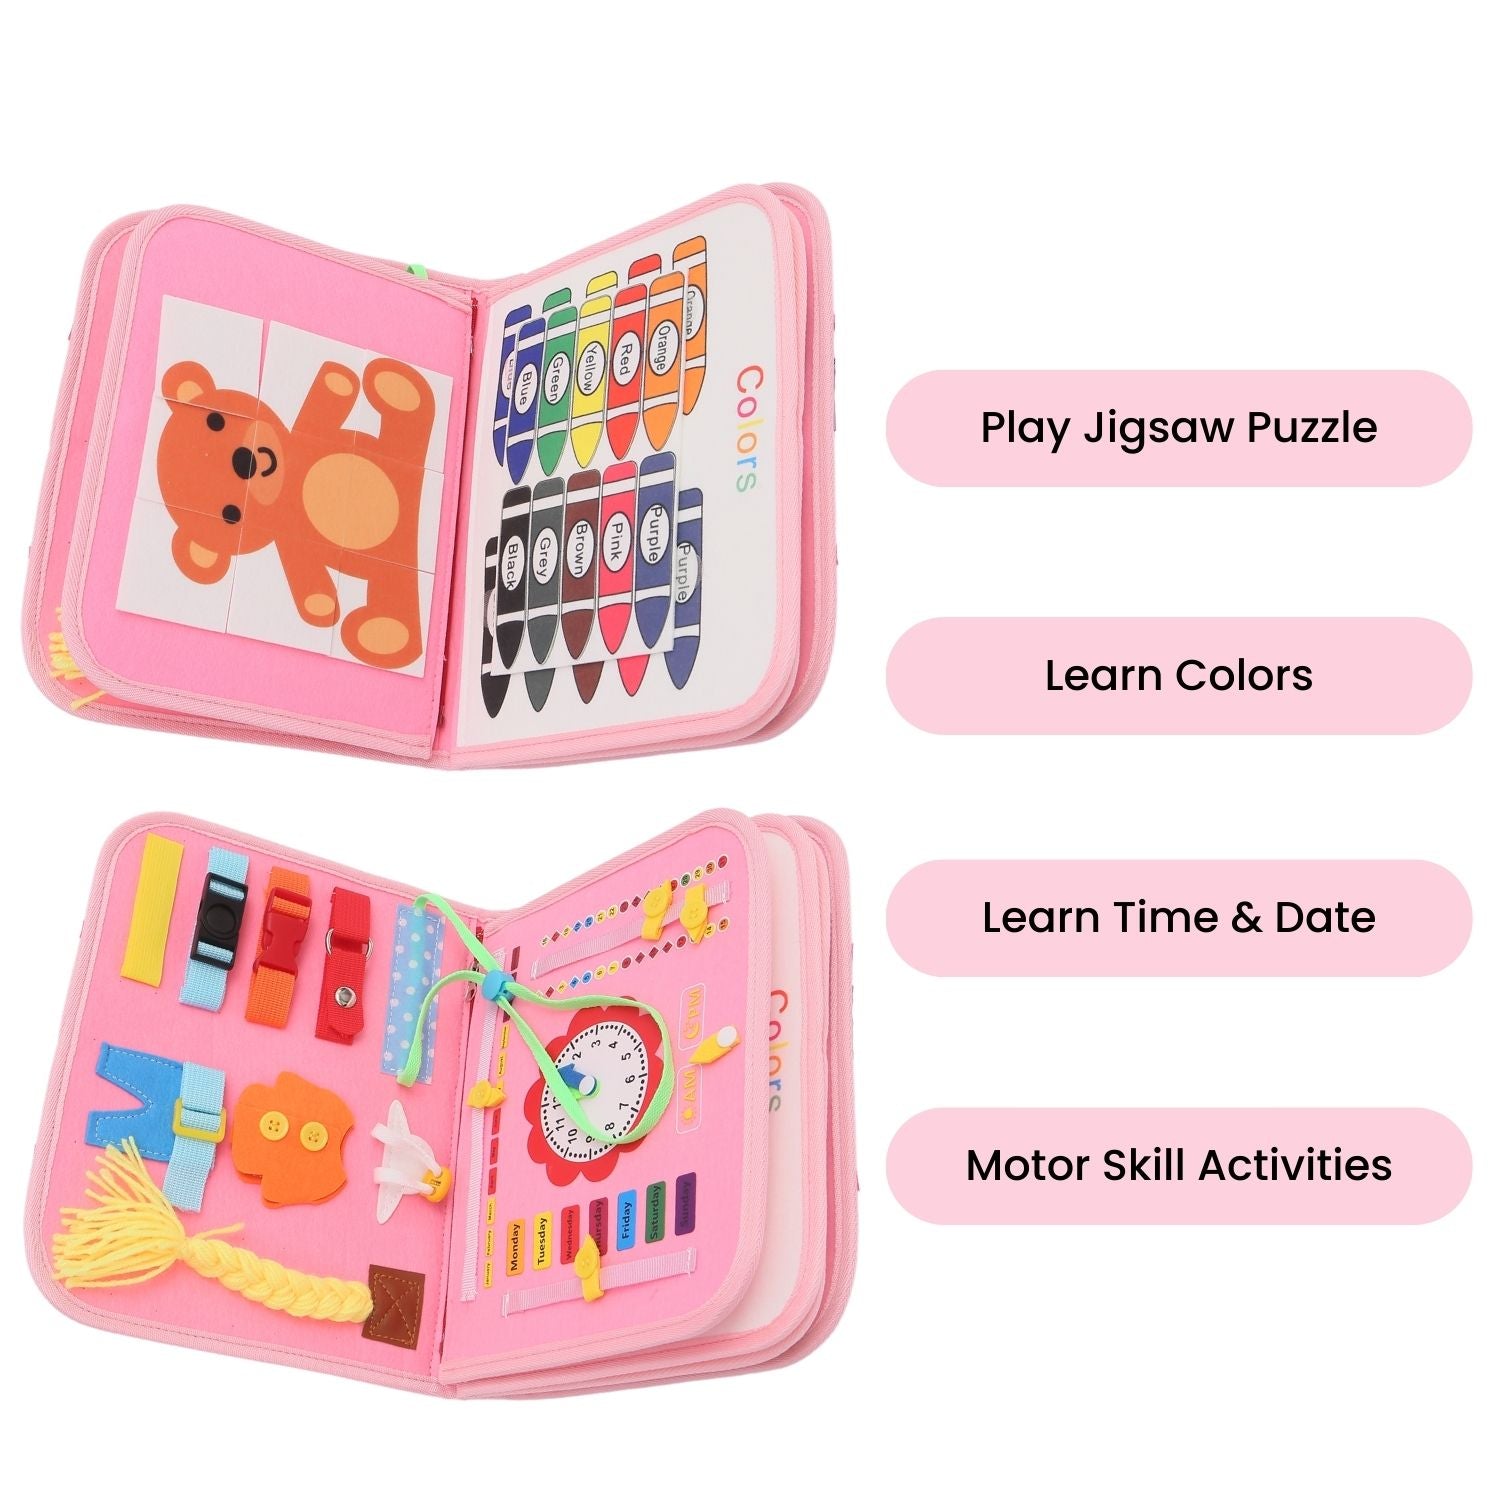 Kids Busy Board Learning Sensory Toy (Pink) - Little Kids Business